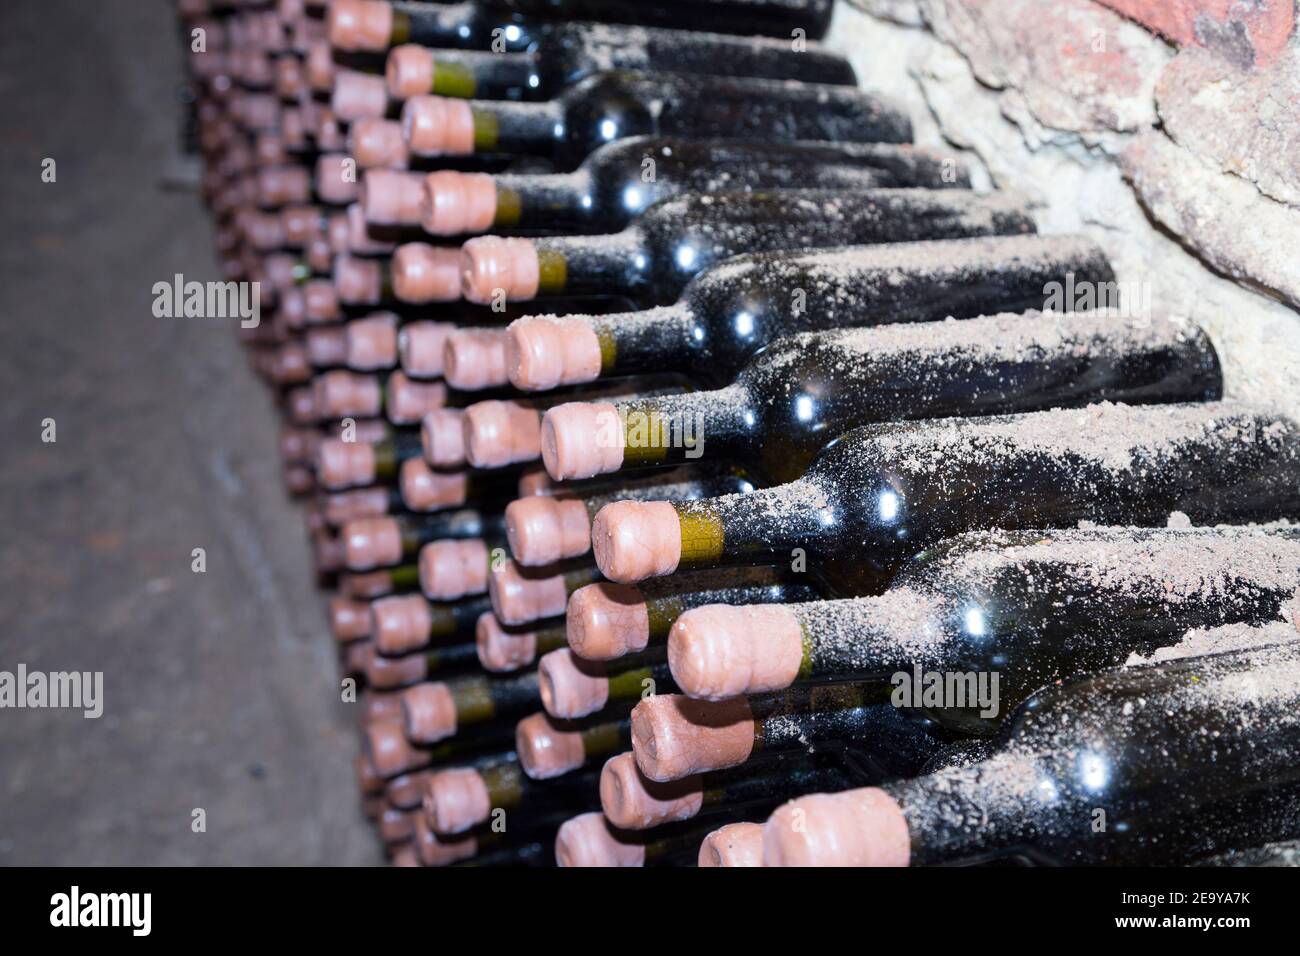 File vecchie bottiglie di vino in cantina. Cantina della Repubblica di Moldavia. Foto Stock